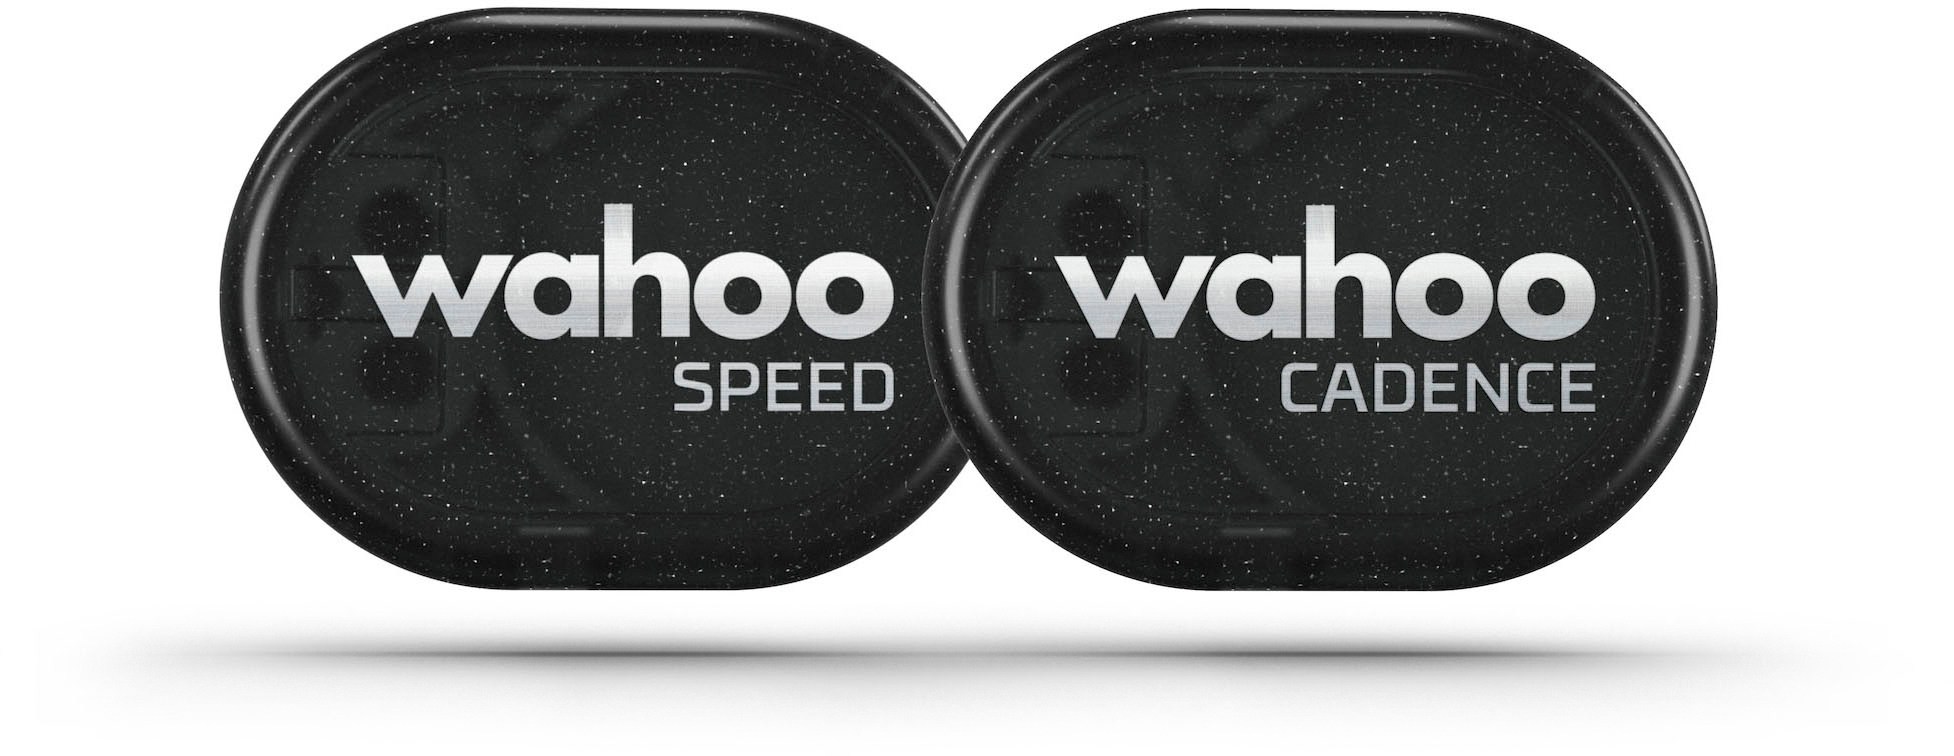 Комплект датчиков скорости и частоты вращения педалей Wahoo Fitness, черный комплект датчика скорости велосипеда 2 и датчика частоты вращения педалей 2 garmin черный